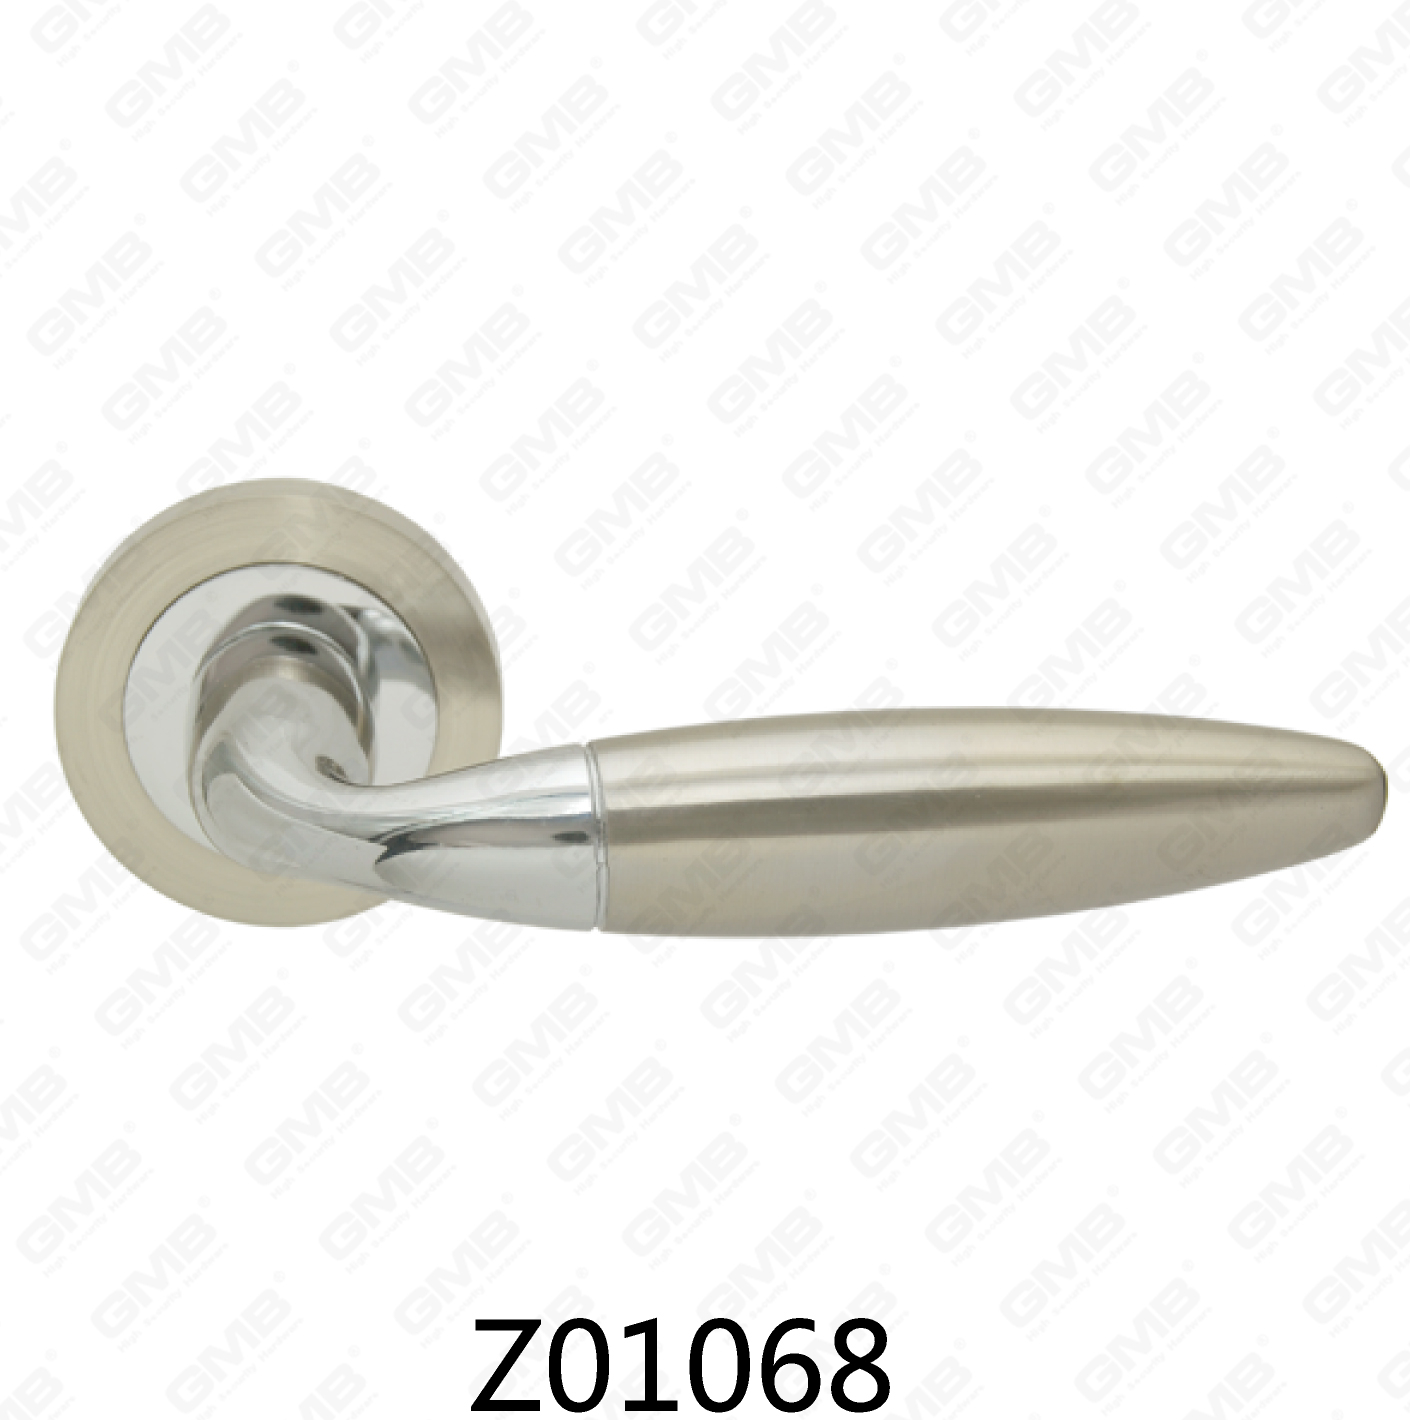 ידית דלת רוזטה מסגסוגת אבץ של Zamak עם רוזטה עגולה (Z01068)